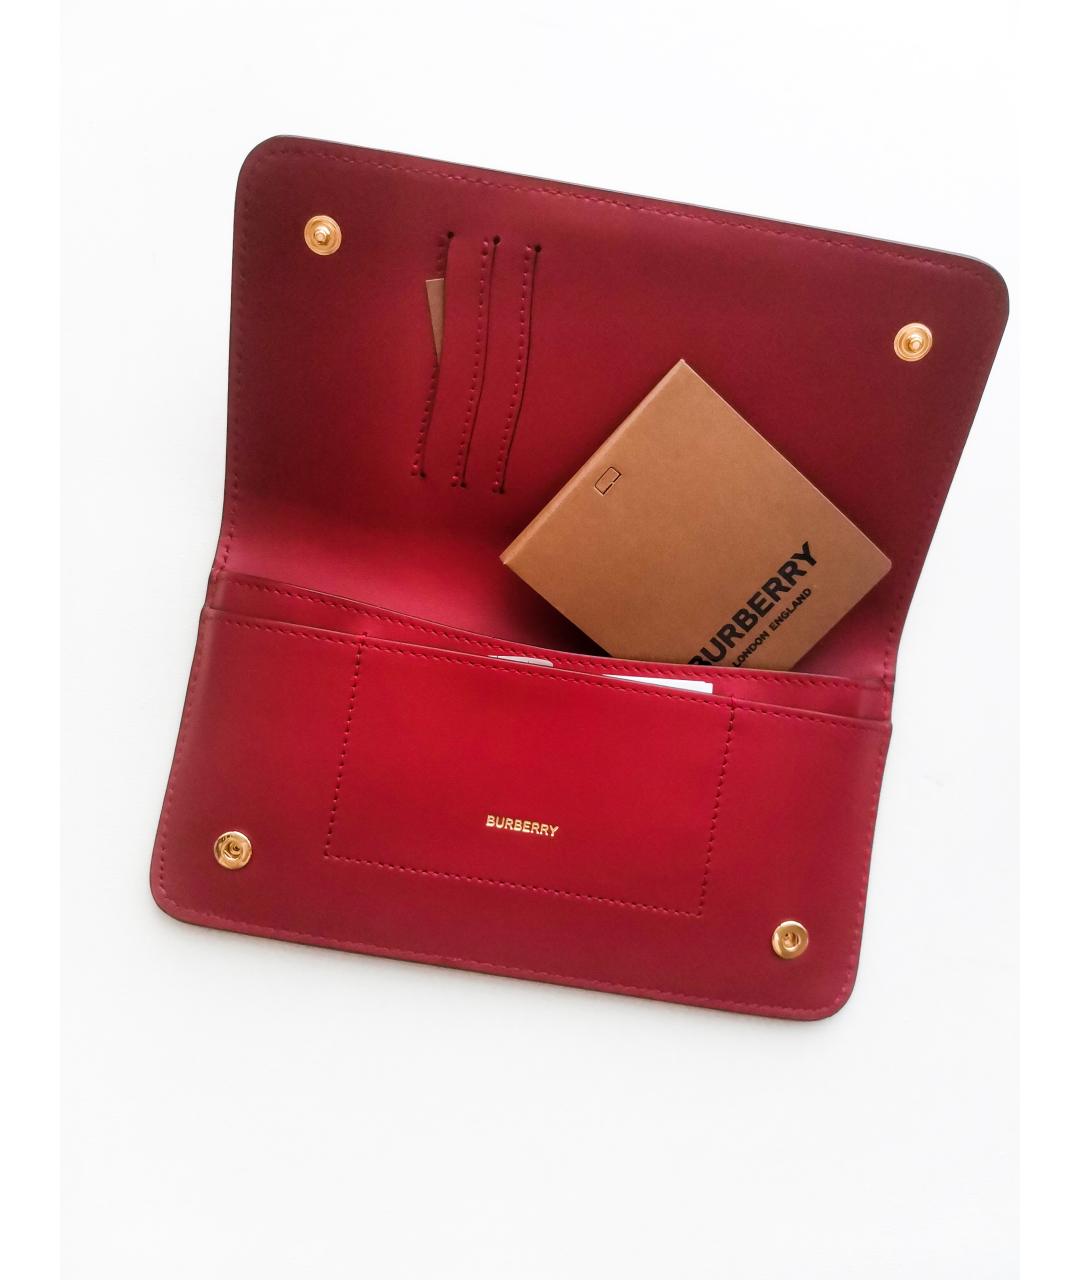 BURBERRY Красный кожаный кошелек, фото 2